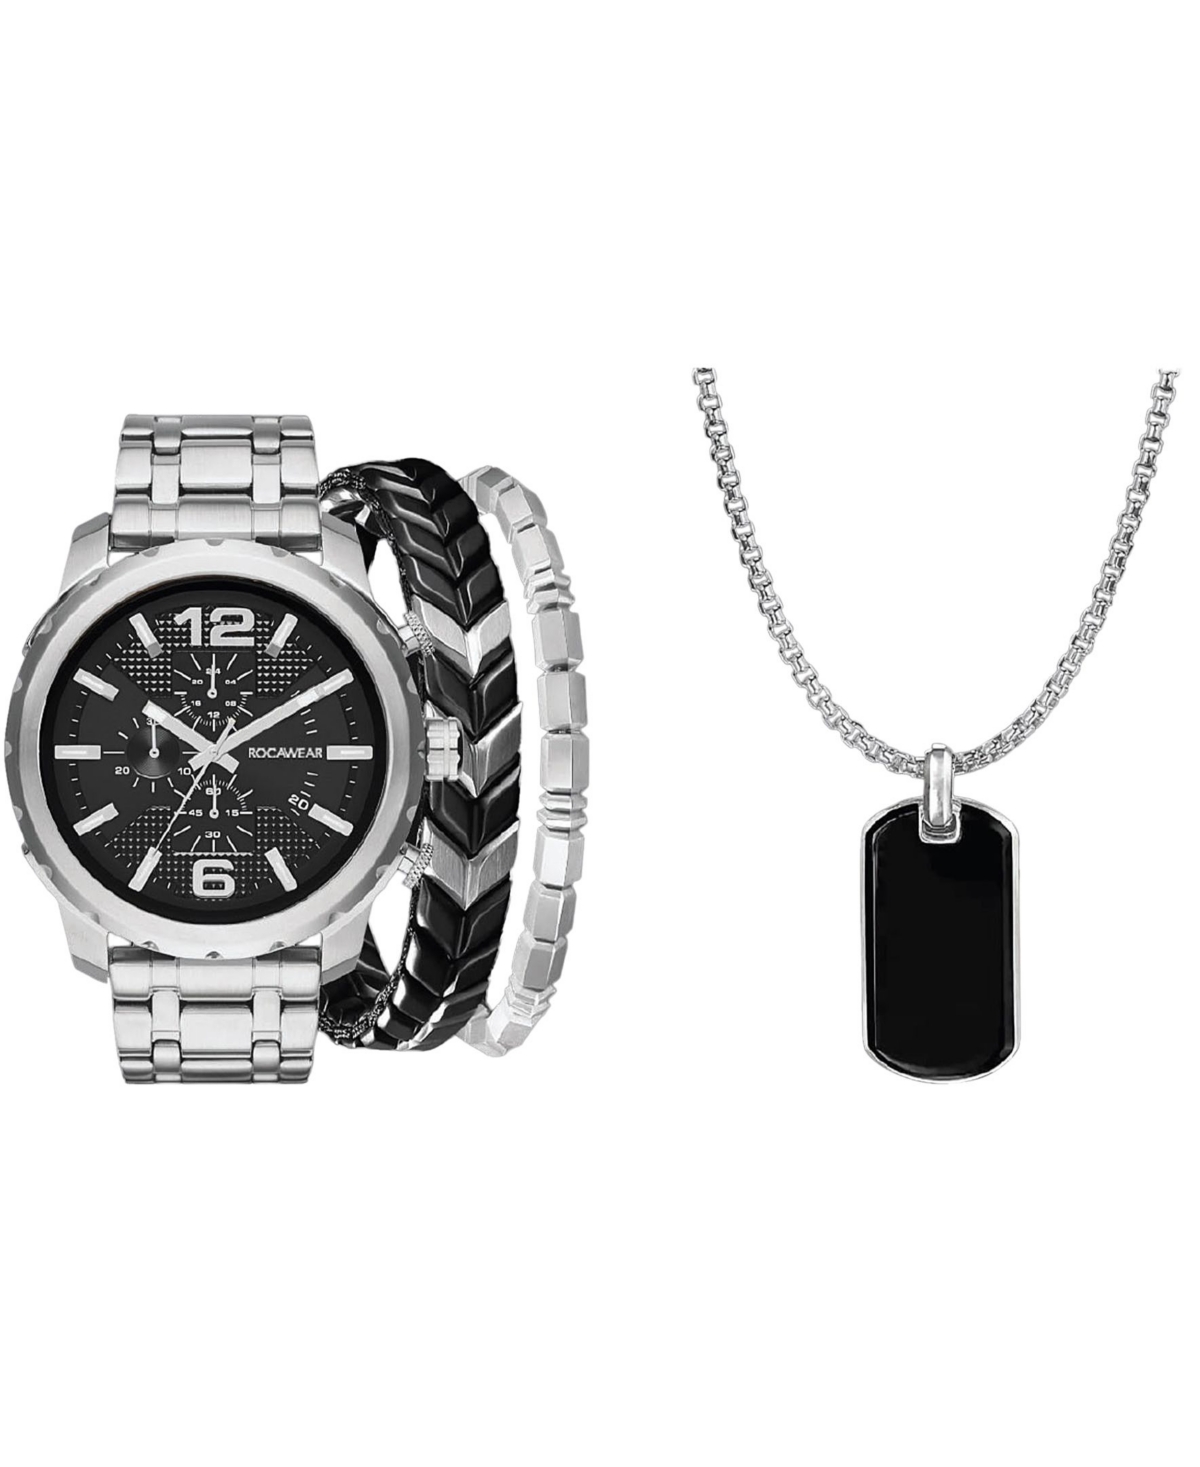 Men's Shiny Silver-Tone Metal Bracelet Watch 50mm Set - Black, Shiny Silver-Tone